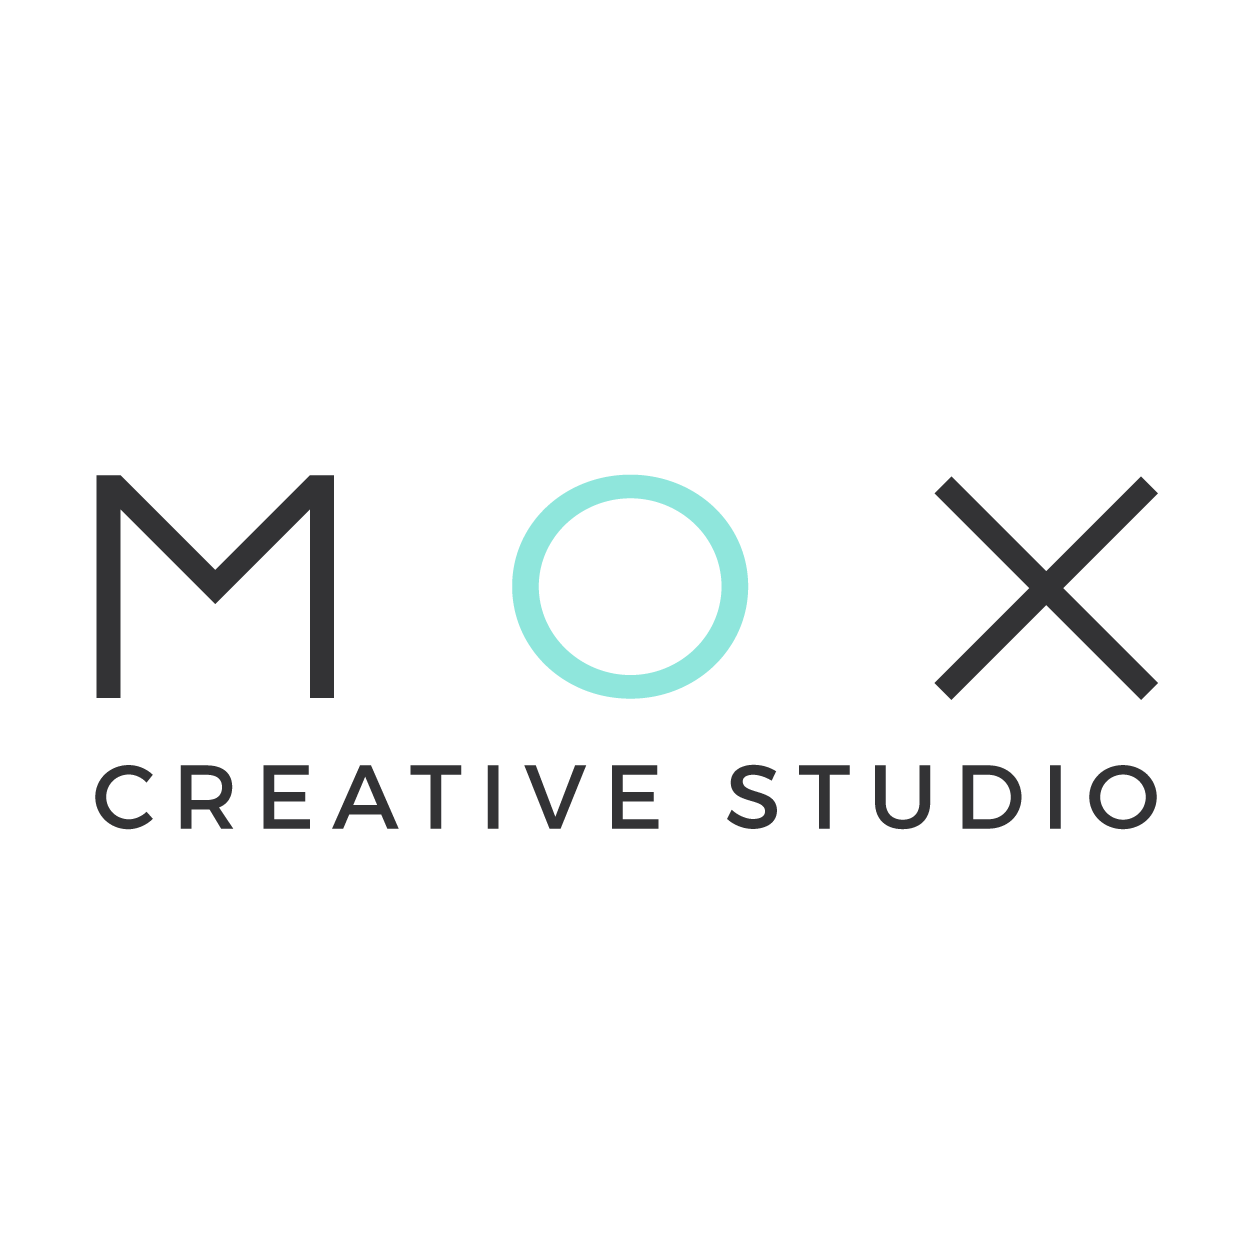 MOX Creative Studio